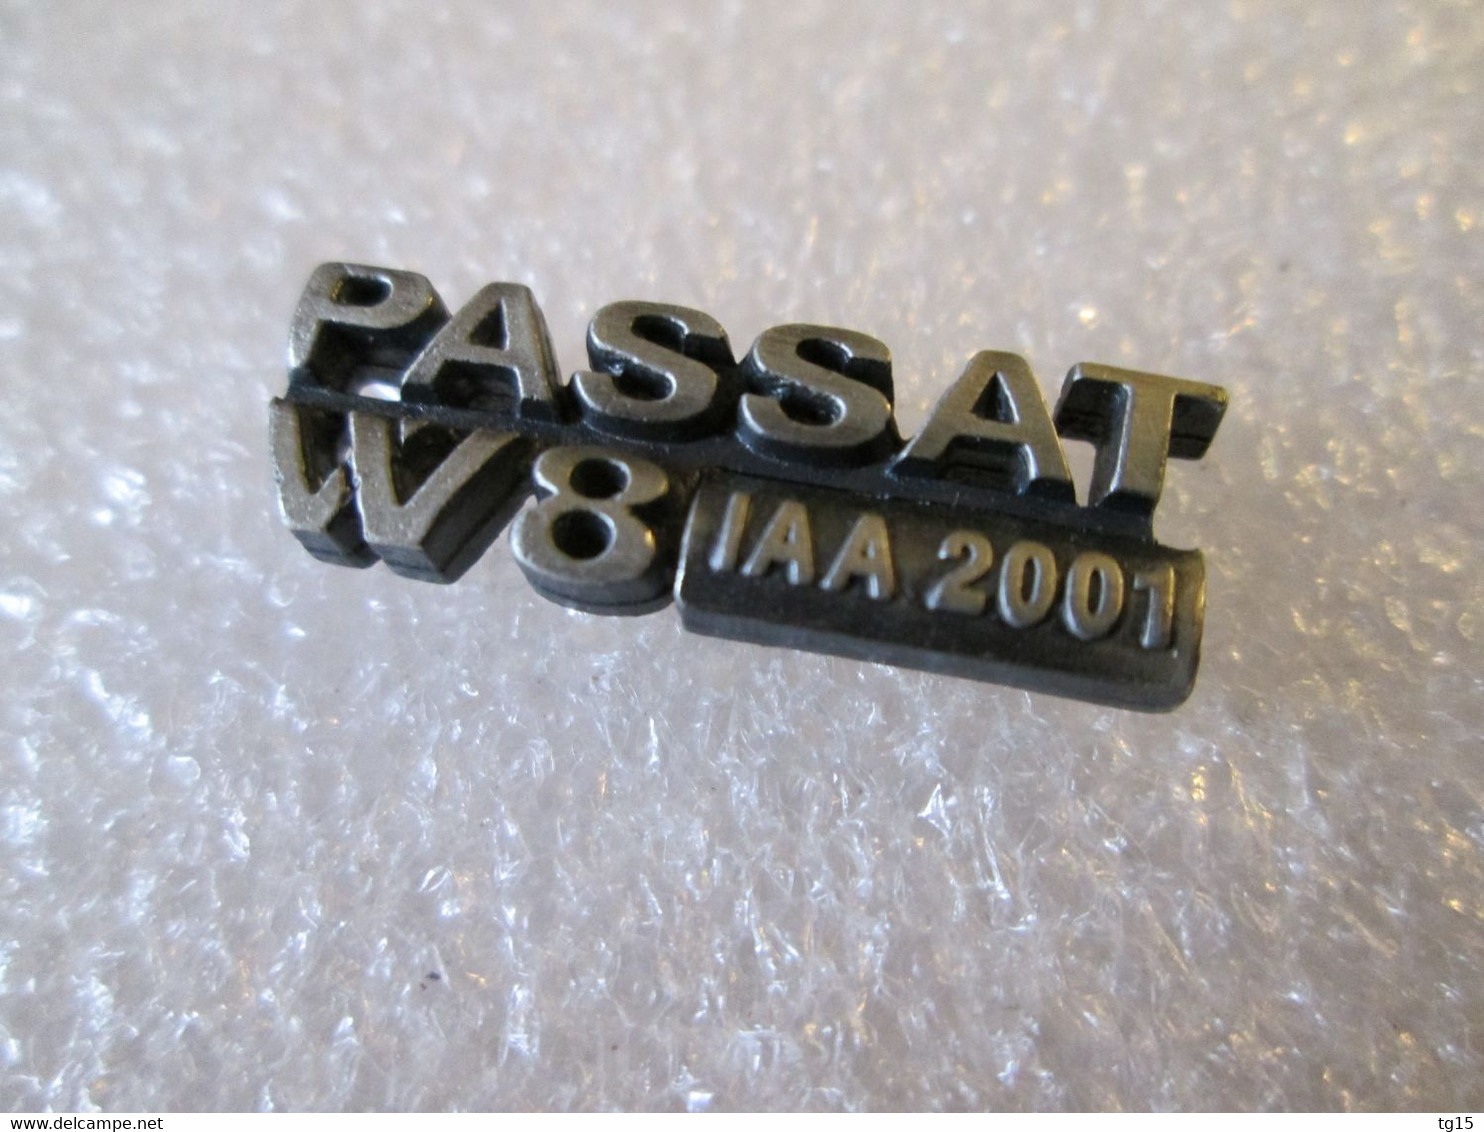 PIN'S    VOLKSWAGEN   PASSAT   W8  IAA  2001 - Volkswagen